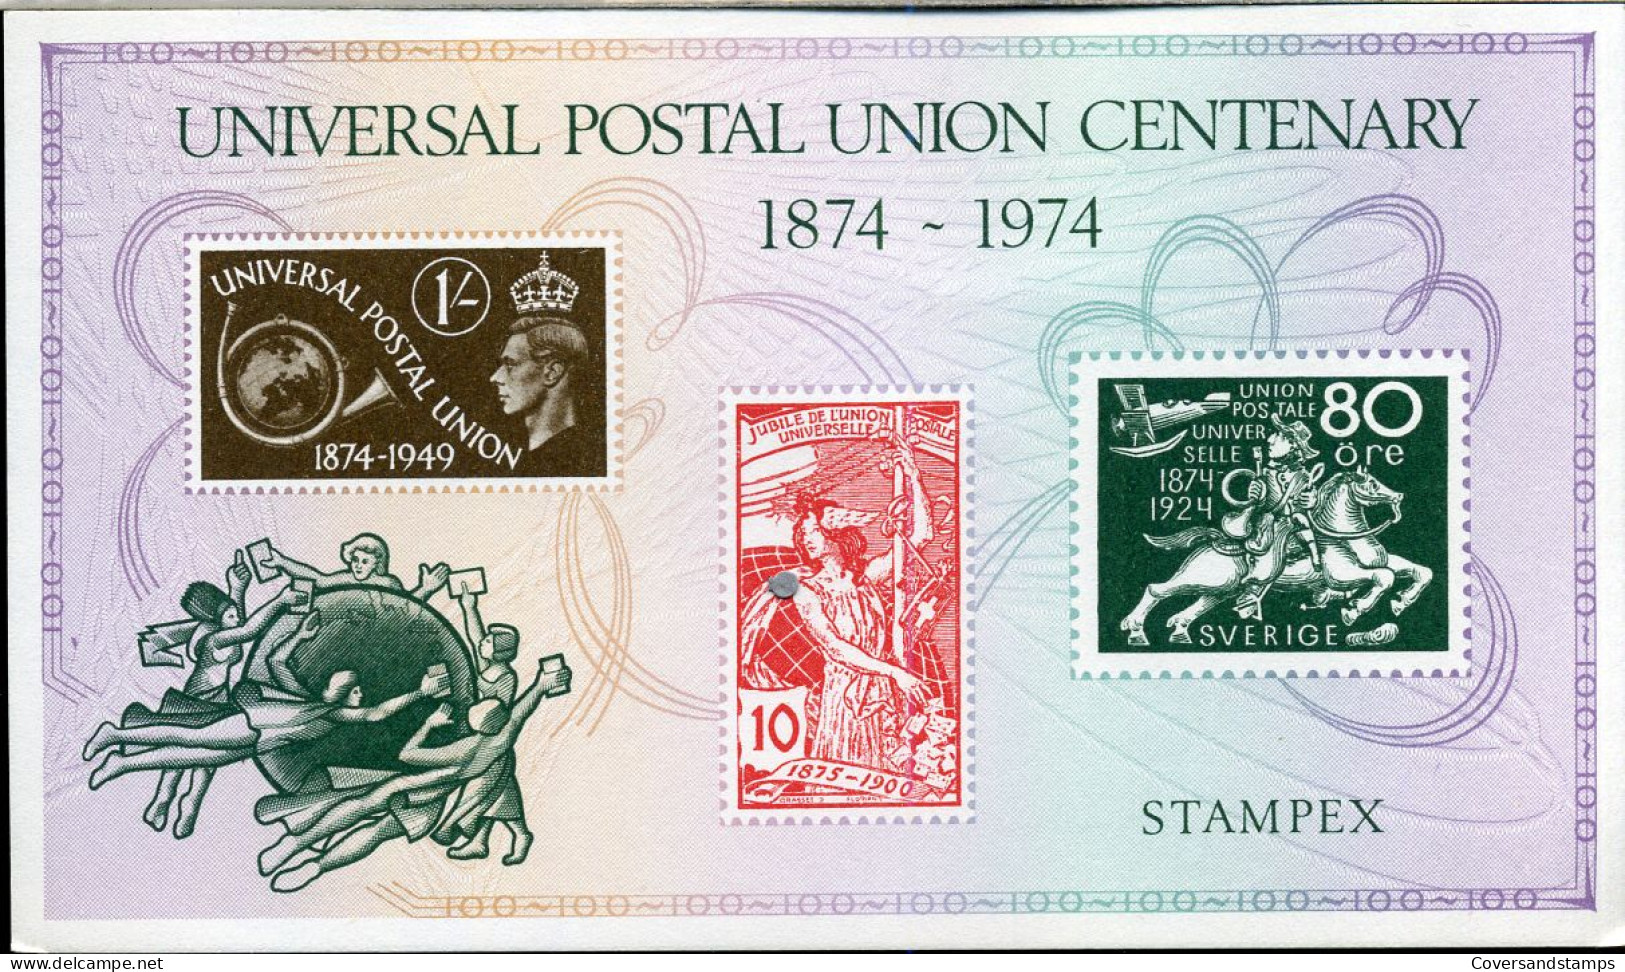 Universal Postal Union Centenary 1874-1974 - Stampex - Souvenir - U.P.U.